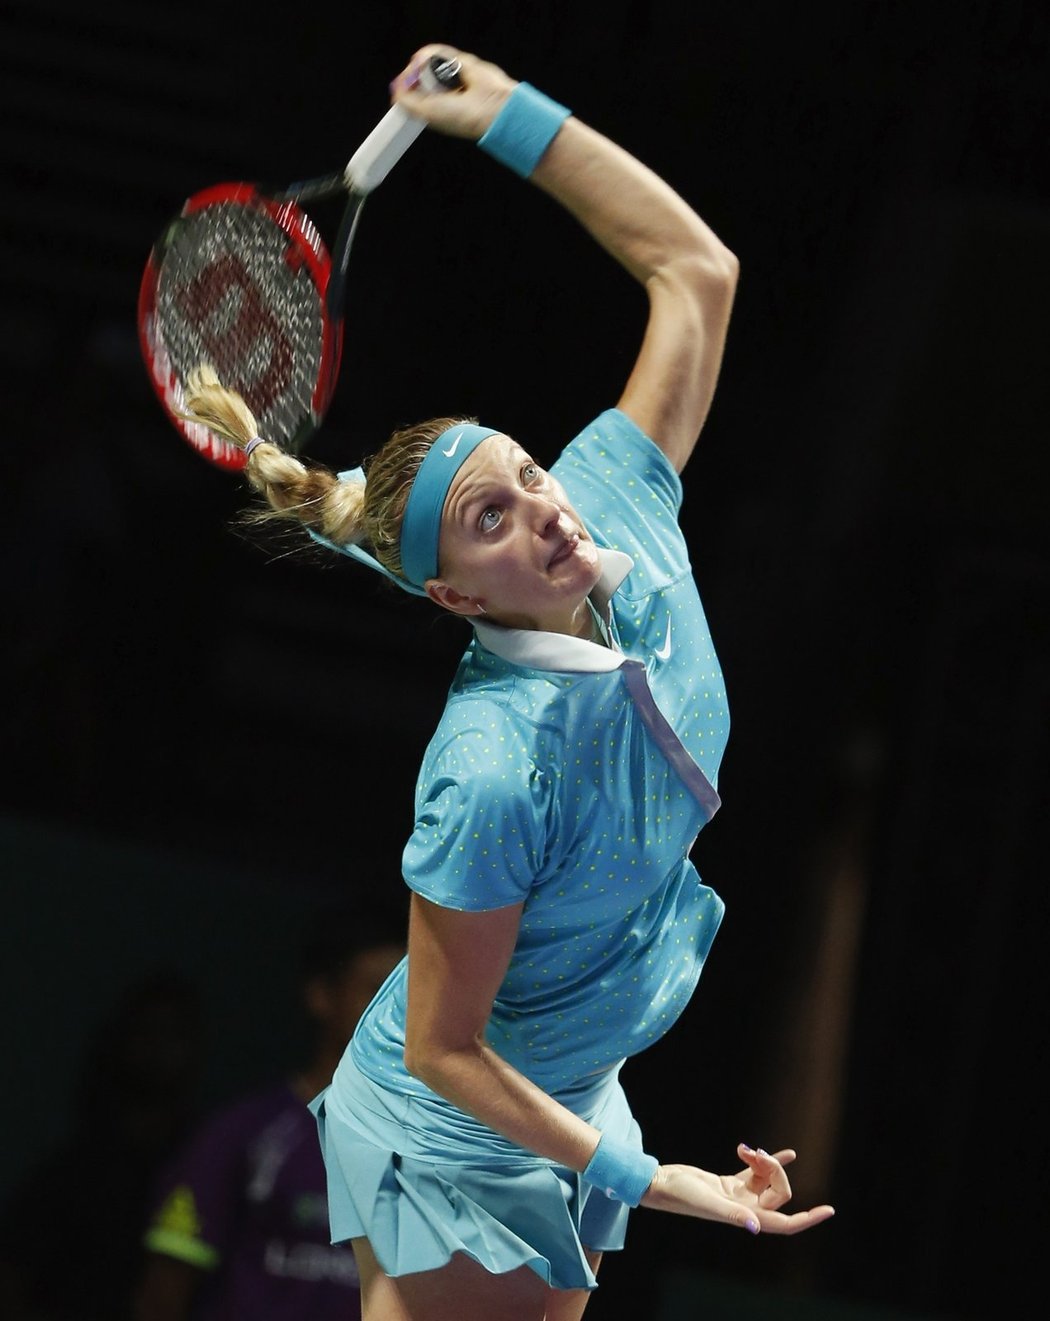 Česká tenistka Petra Kvitová porazila ve svém druhém zápase na Turnaji mistryň Marii Šarapovovou ve dvou setech 6:3, 6:2. O postupu rozhodne poslední zápas s Caroline Wozniackou.